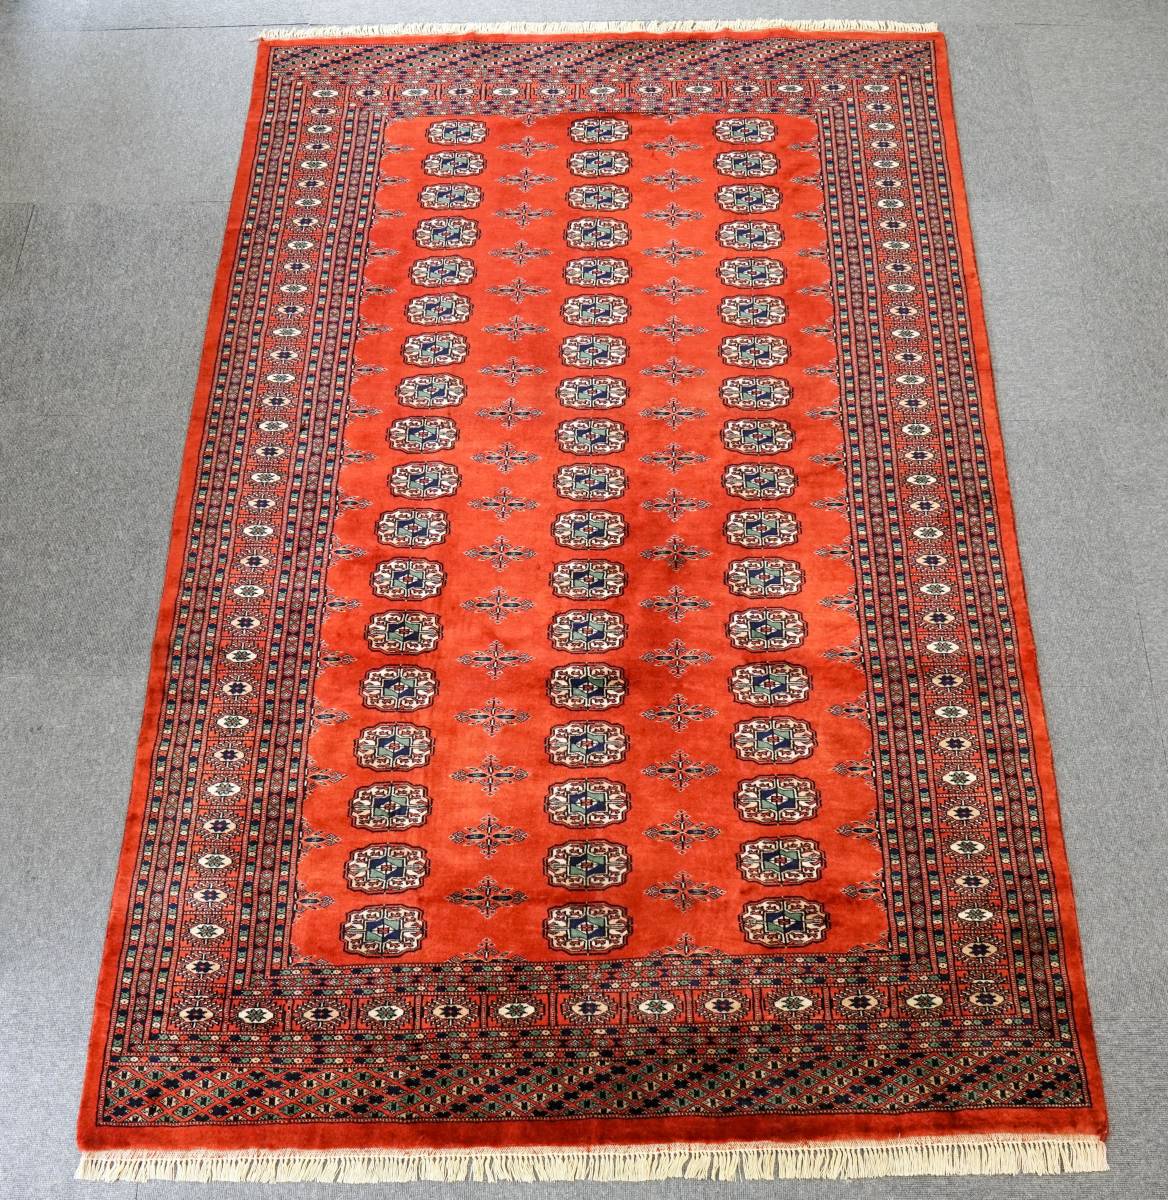 ボハラデザインのパキスタン手織り絨毯 size:215×142cm リビングラグ 